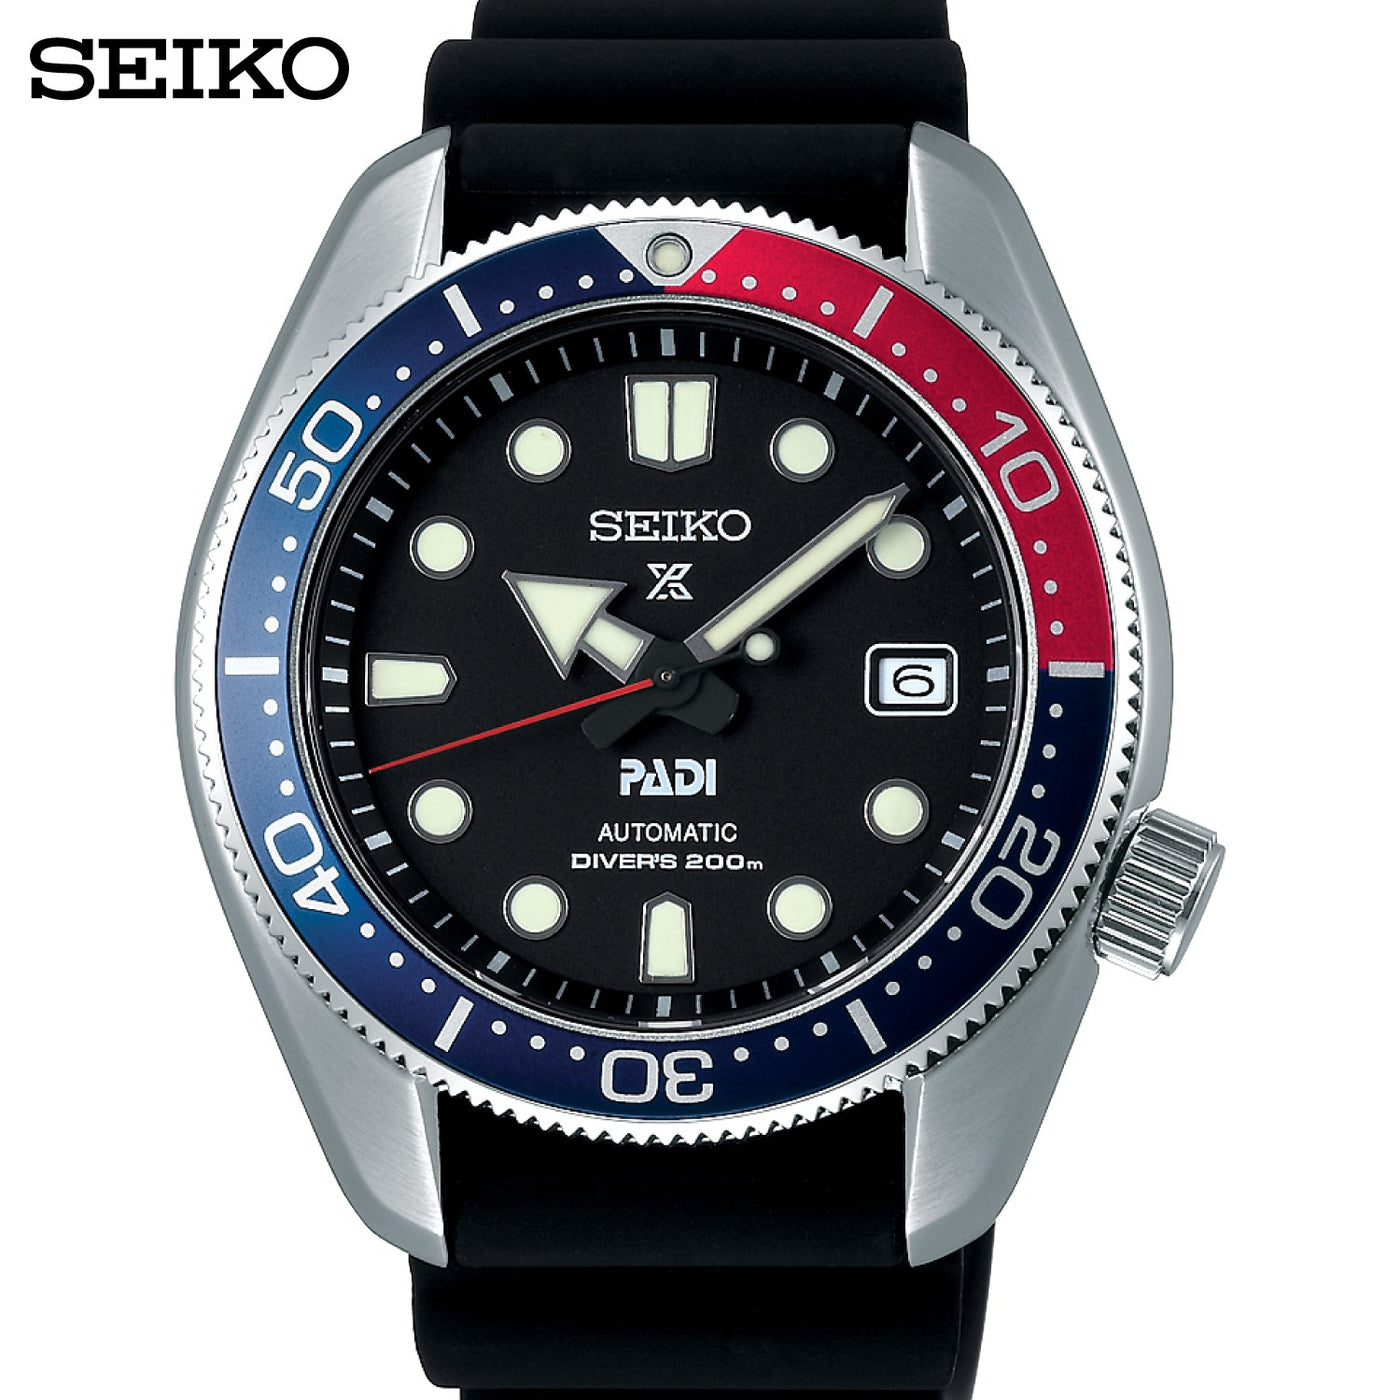 Seiko (ไซโก) นาฬิกาผู้ชาย รุ่น Prospex SPB087J ระบบออโตเมติก ขนาดตัวเรือน 44 มม.